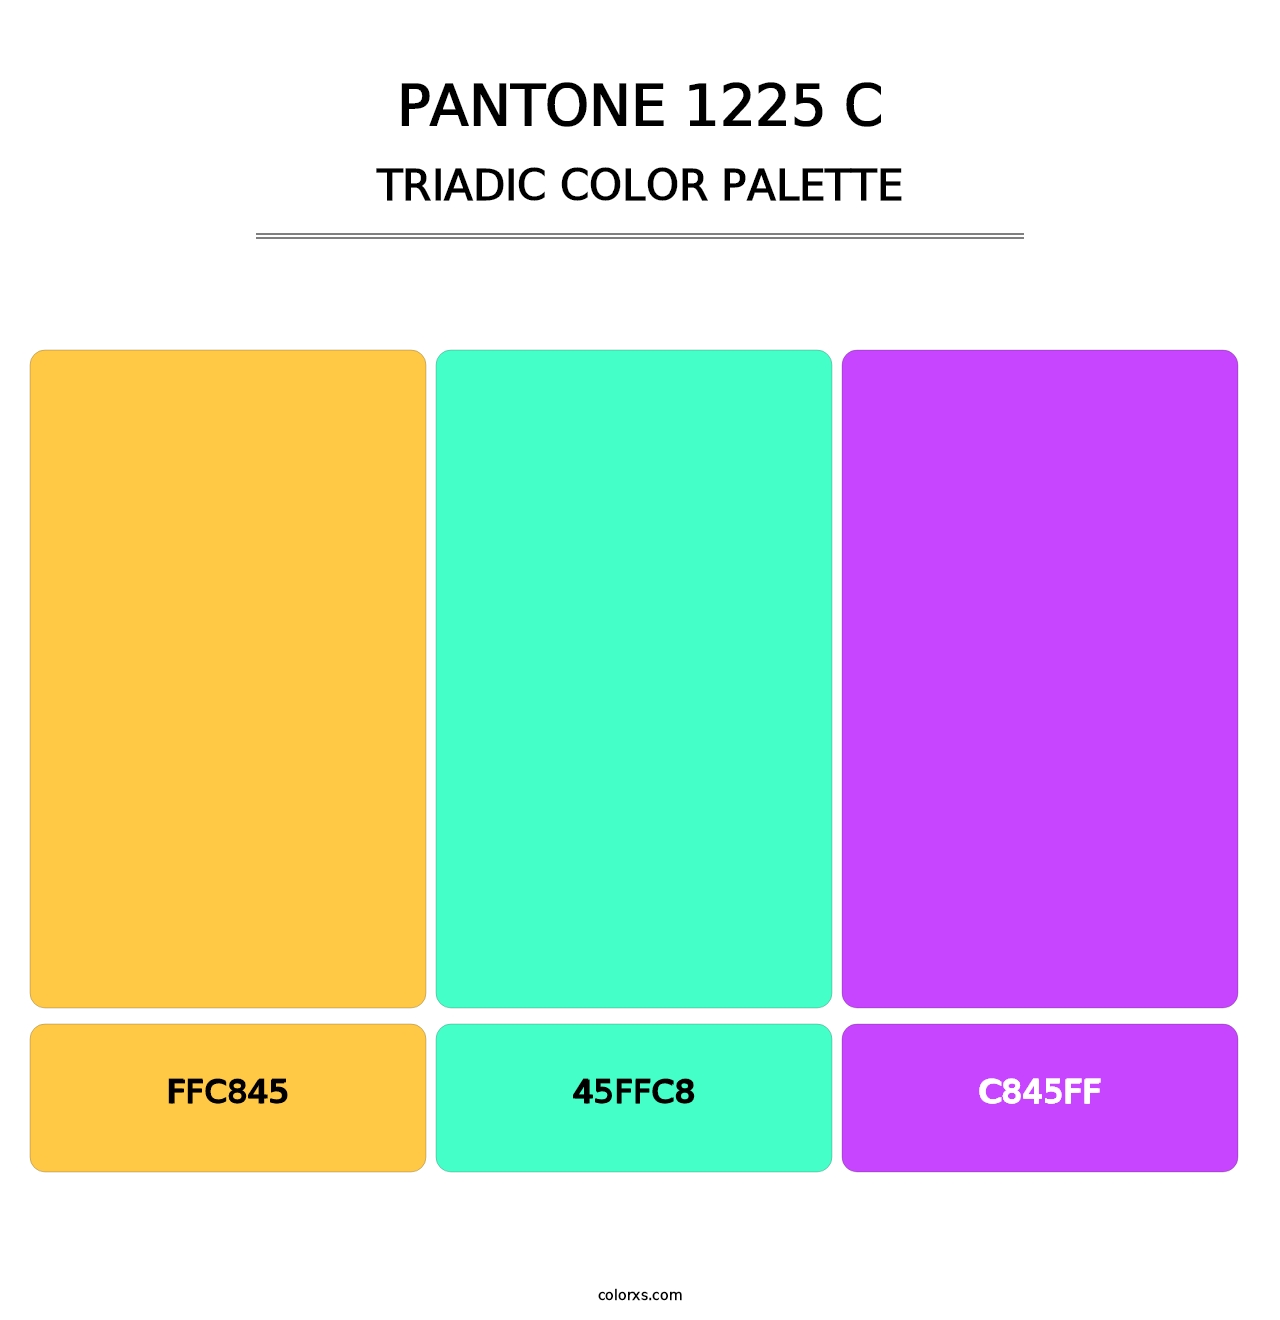 PANTONE 1225 C - Triadic Color Palette